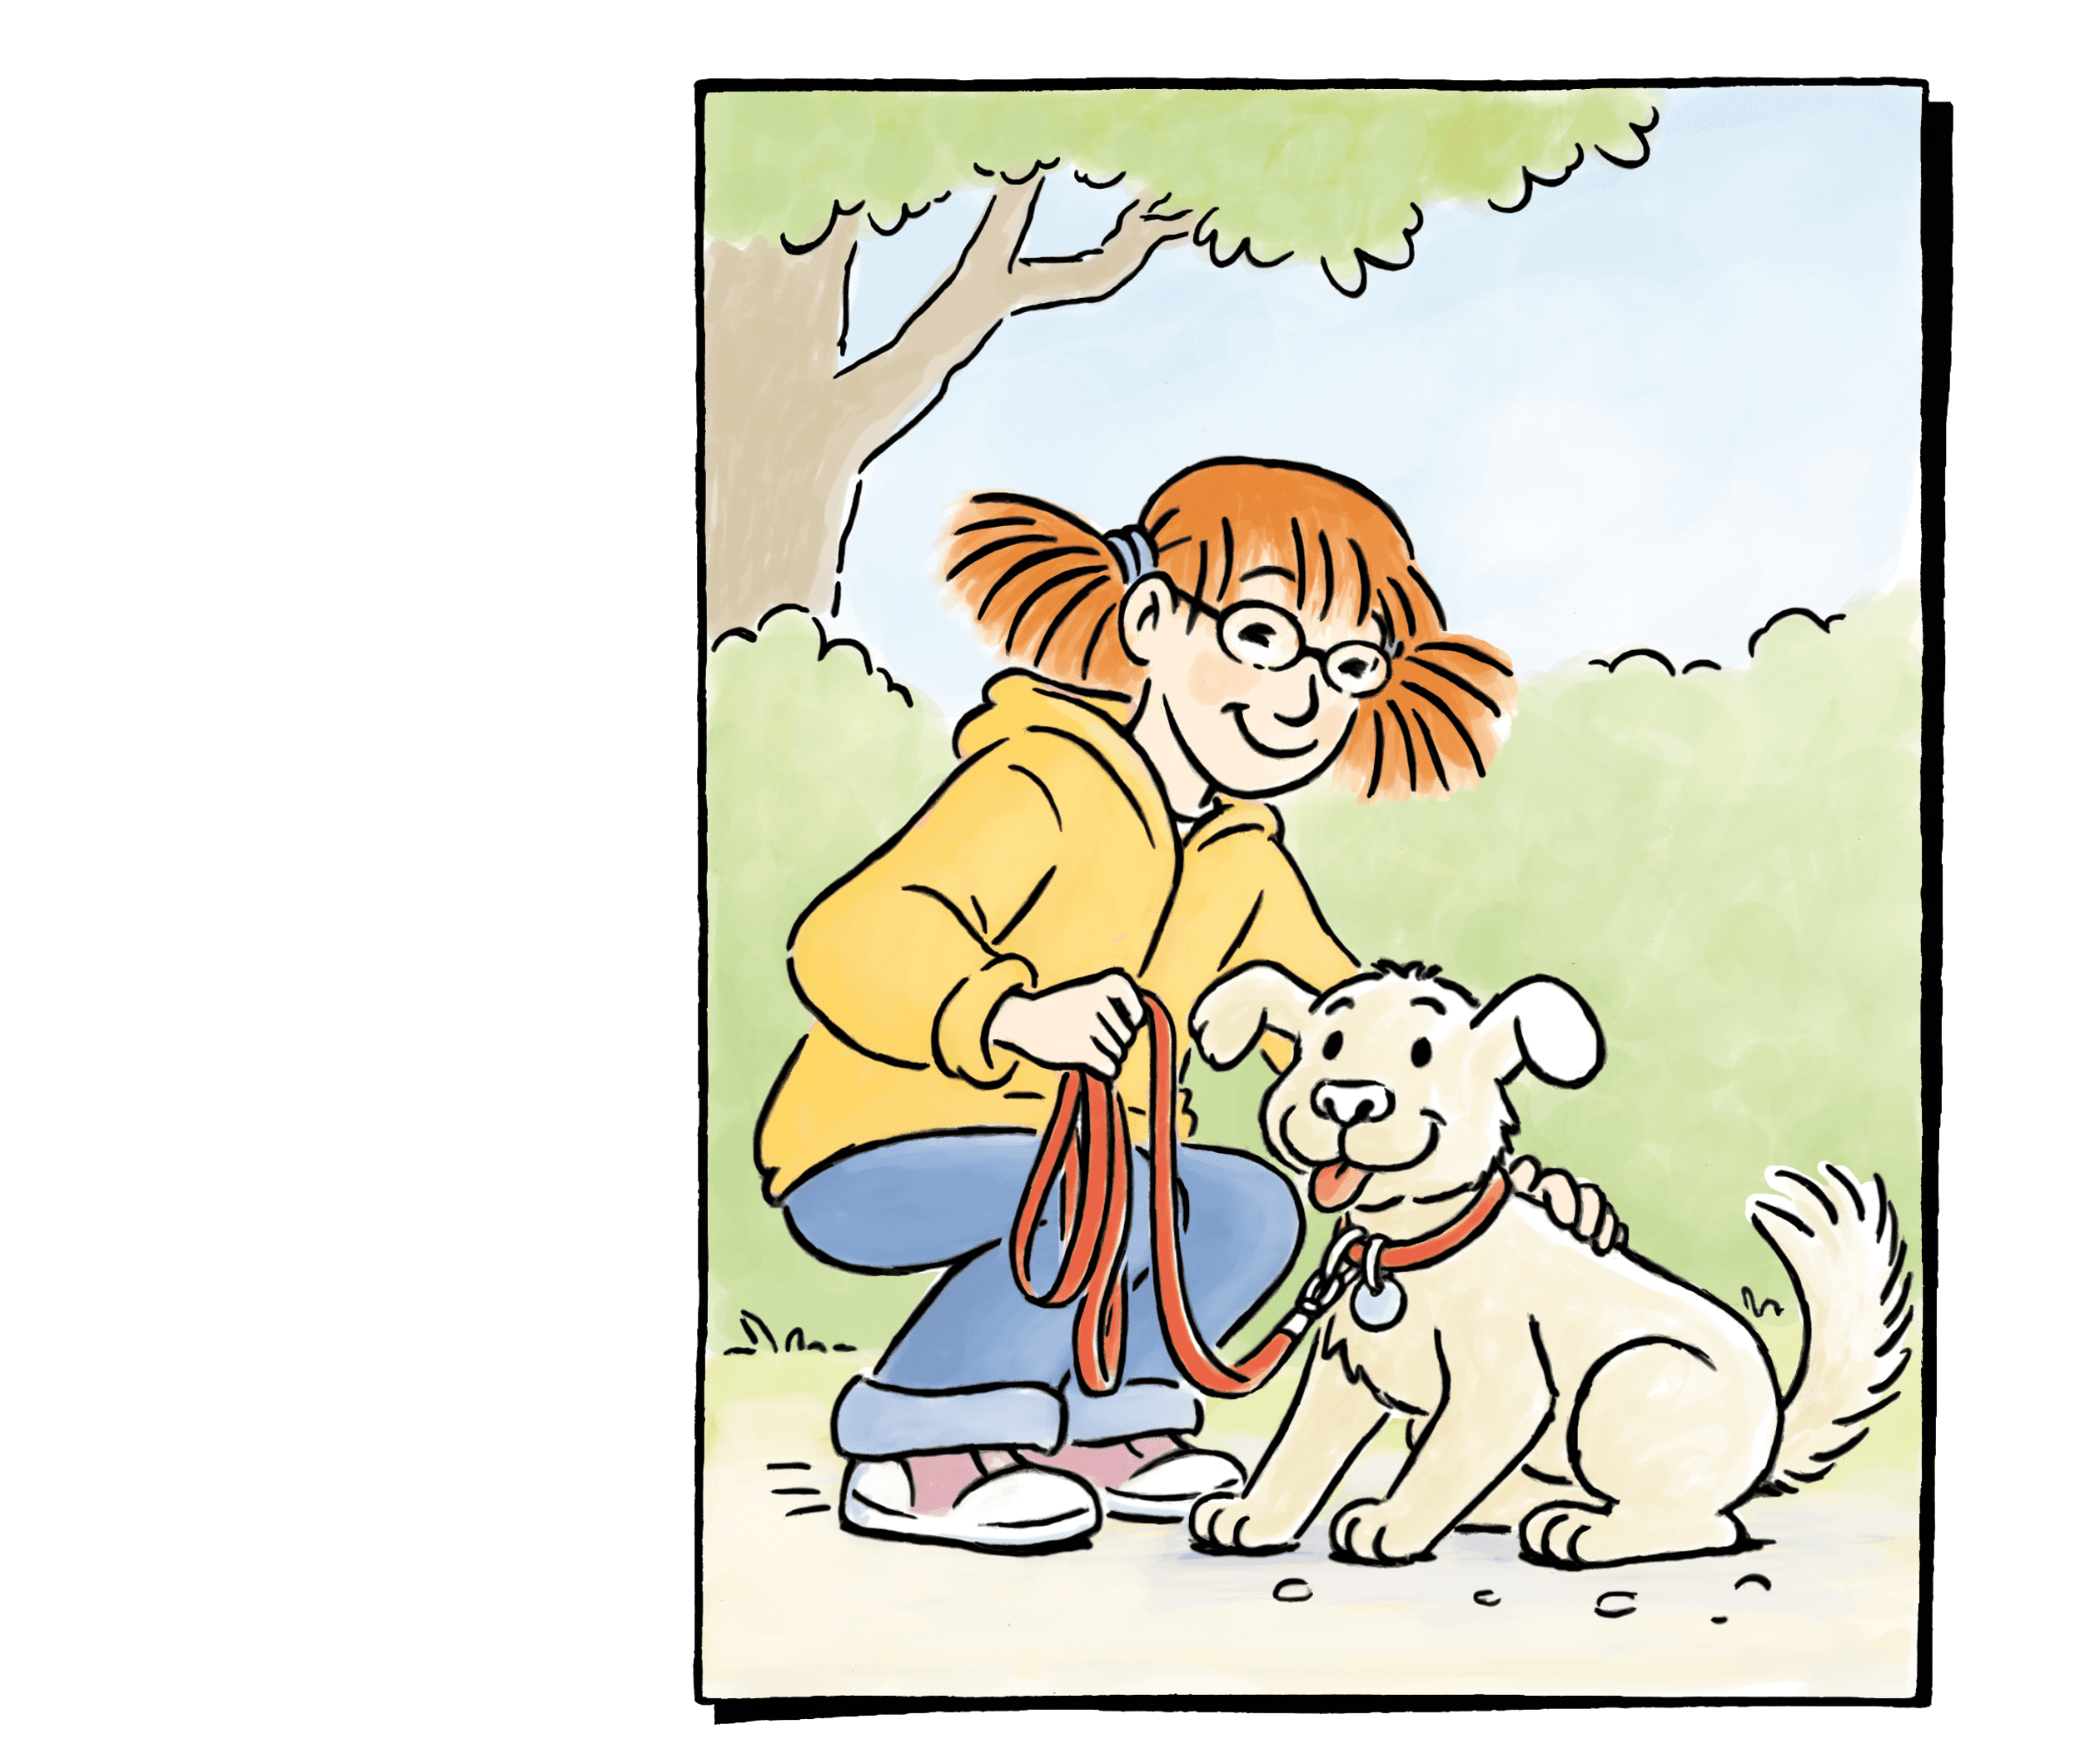 Anna mit ihrem Hund Nicki